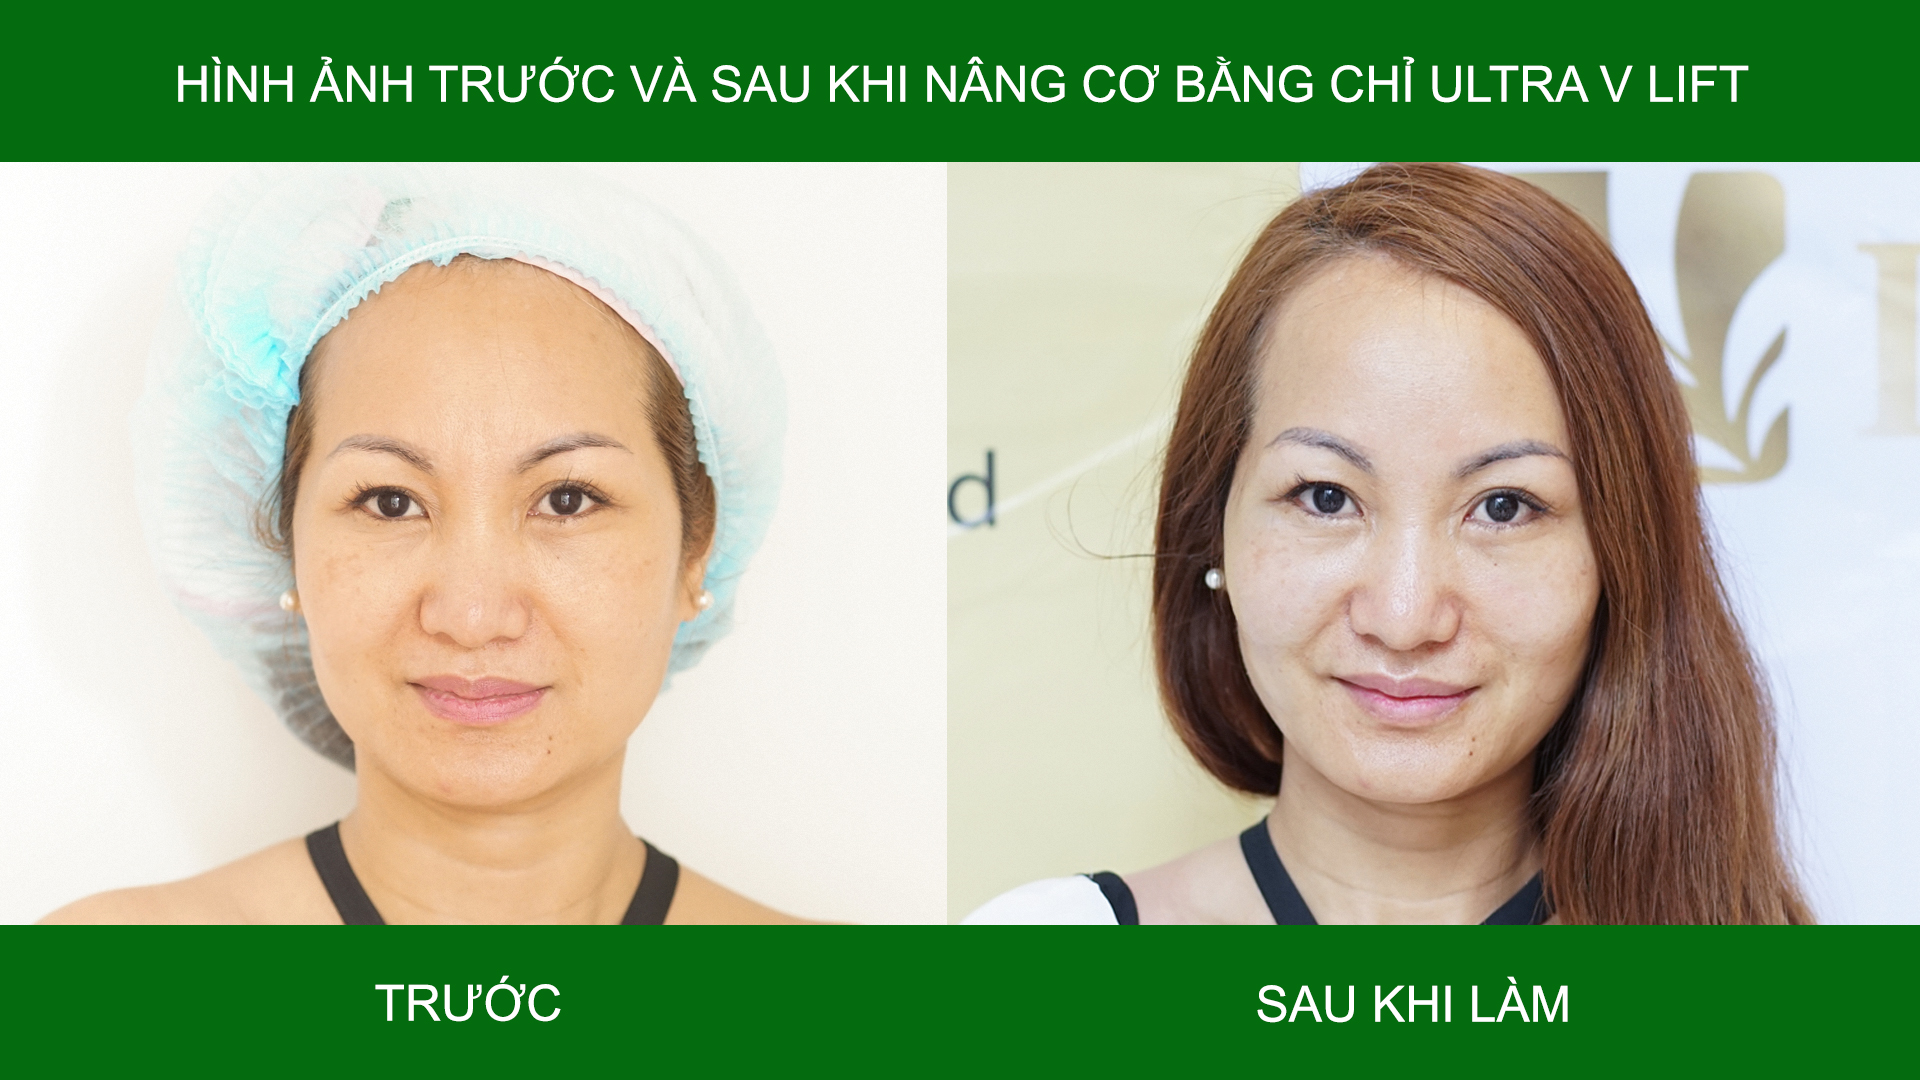 Hình ảnh trước và sau khi làm chỉ ultra v lift 3